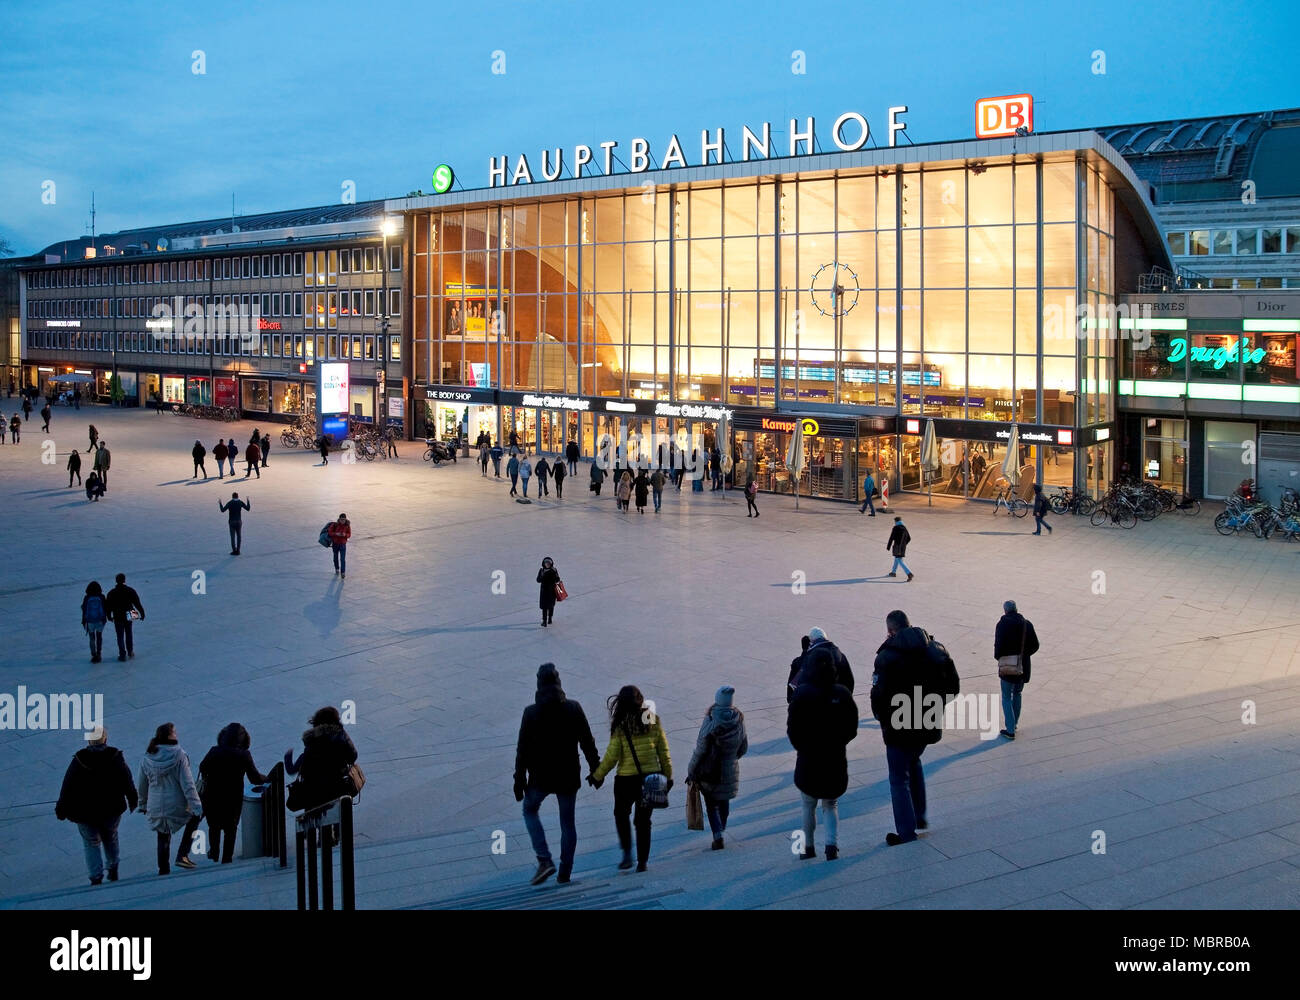 Bahnhofsvorplatz mit Hauptbahnhof bei Dämmerung, Köln, Rheinland, Nordrhein-Westfalen, Deutschland Stockfoto